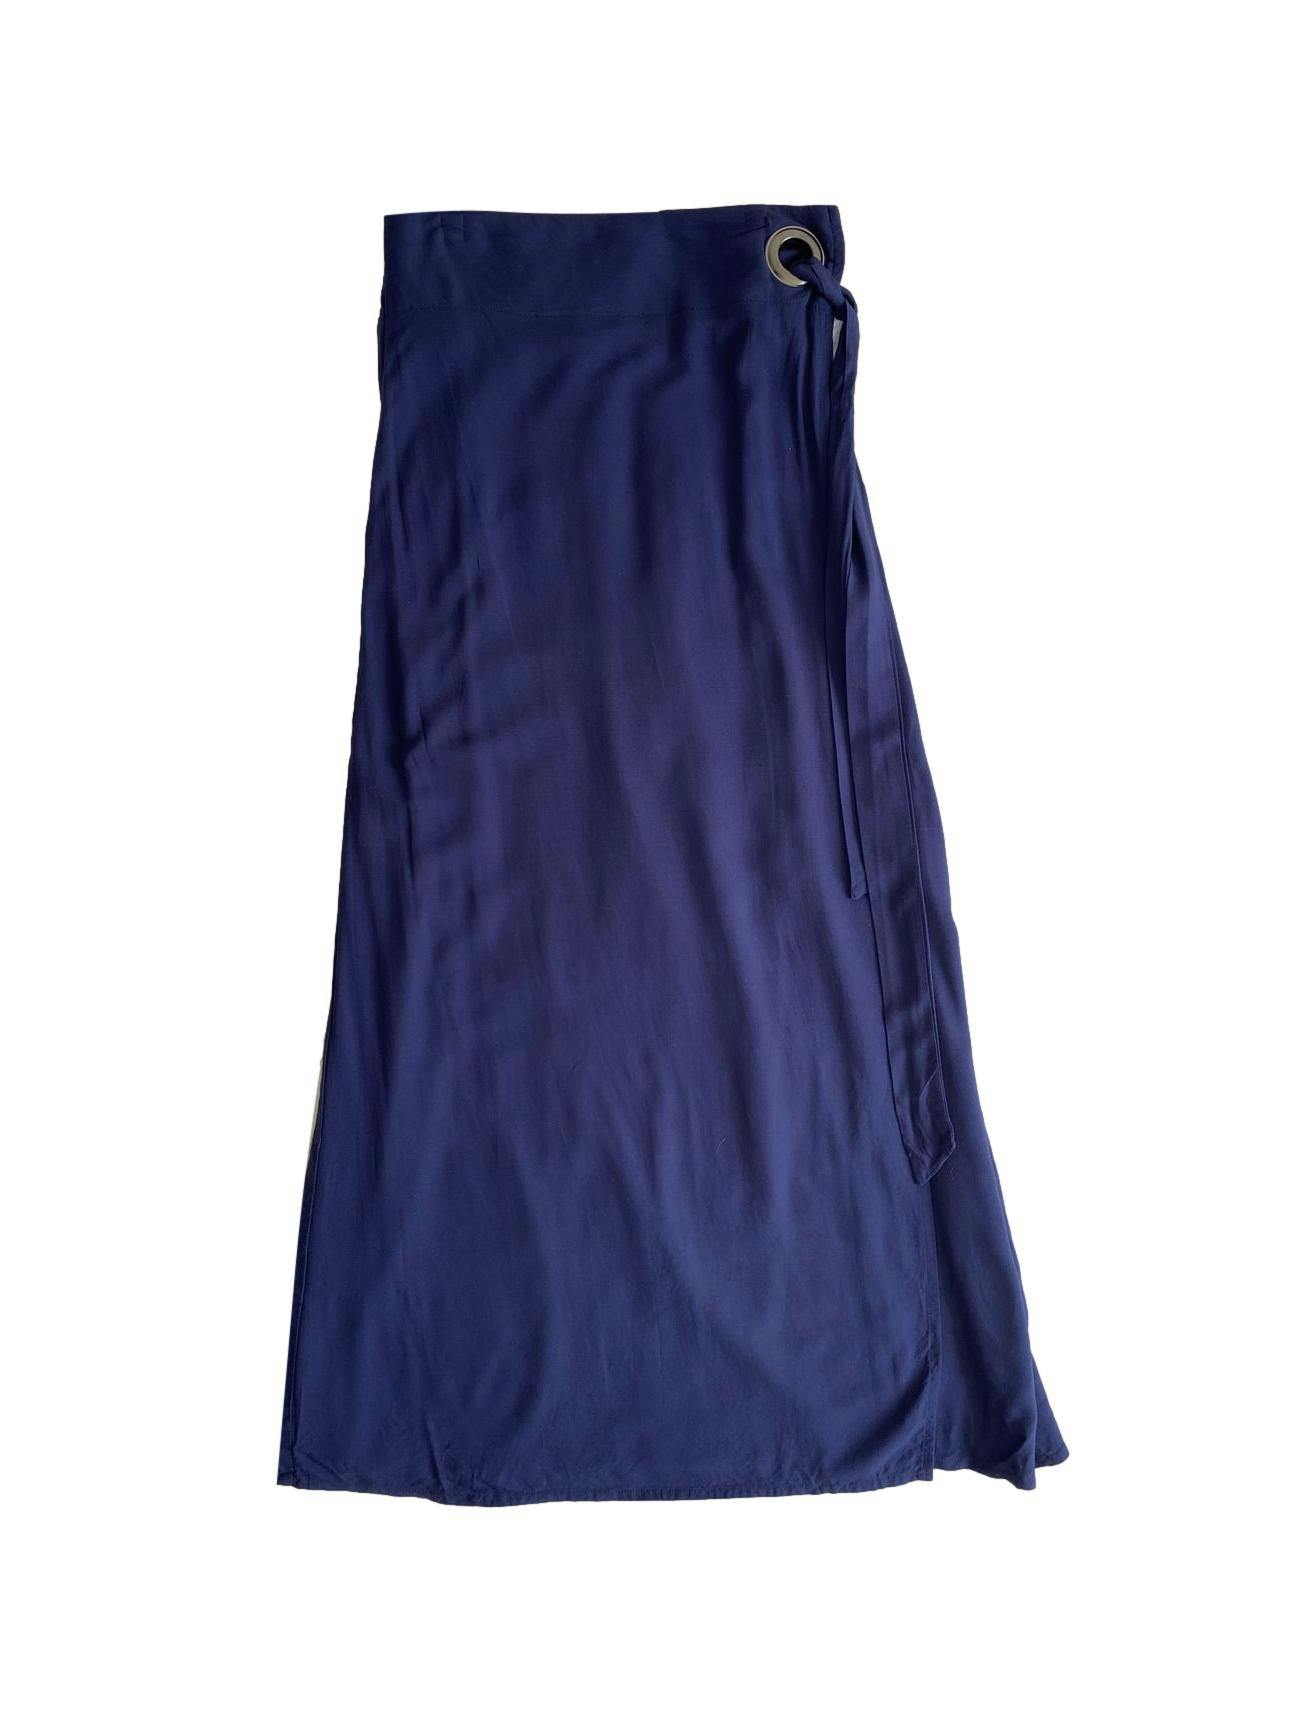 Falda larga Navigata color azul navy, cintura elástica, detalle de lazo lateral para anudar. Cintura: 70cm (sin estirar), largo: 91cm.   